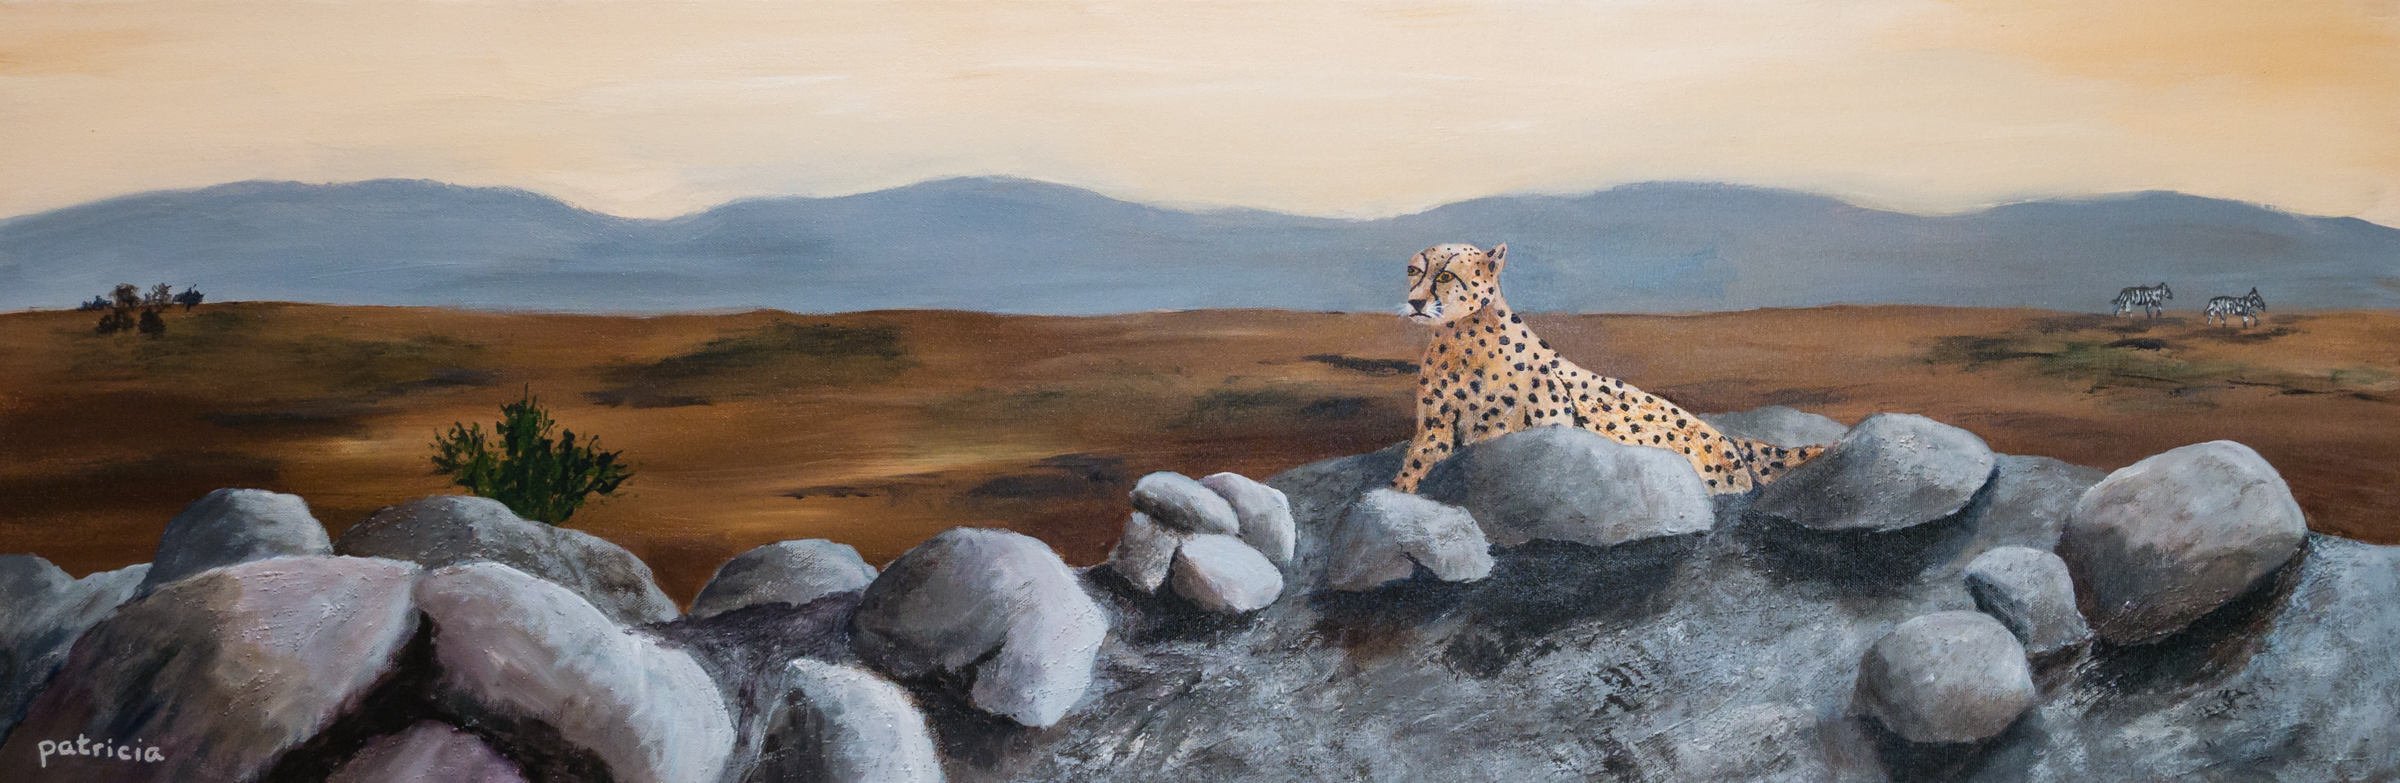 Patricia Gould: Cheetah at Dawn